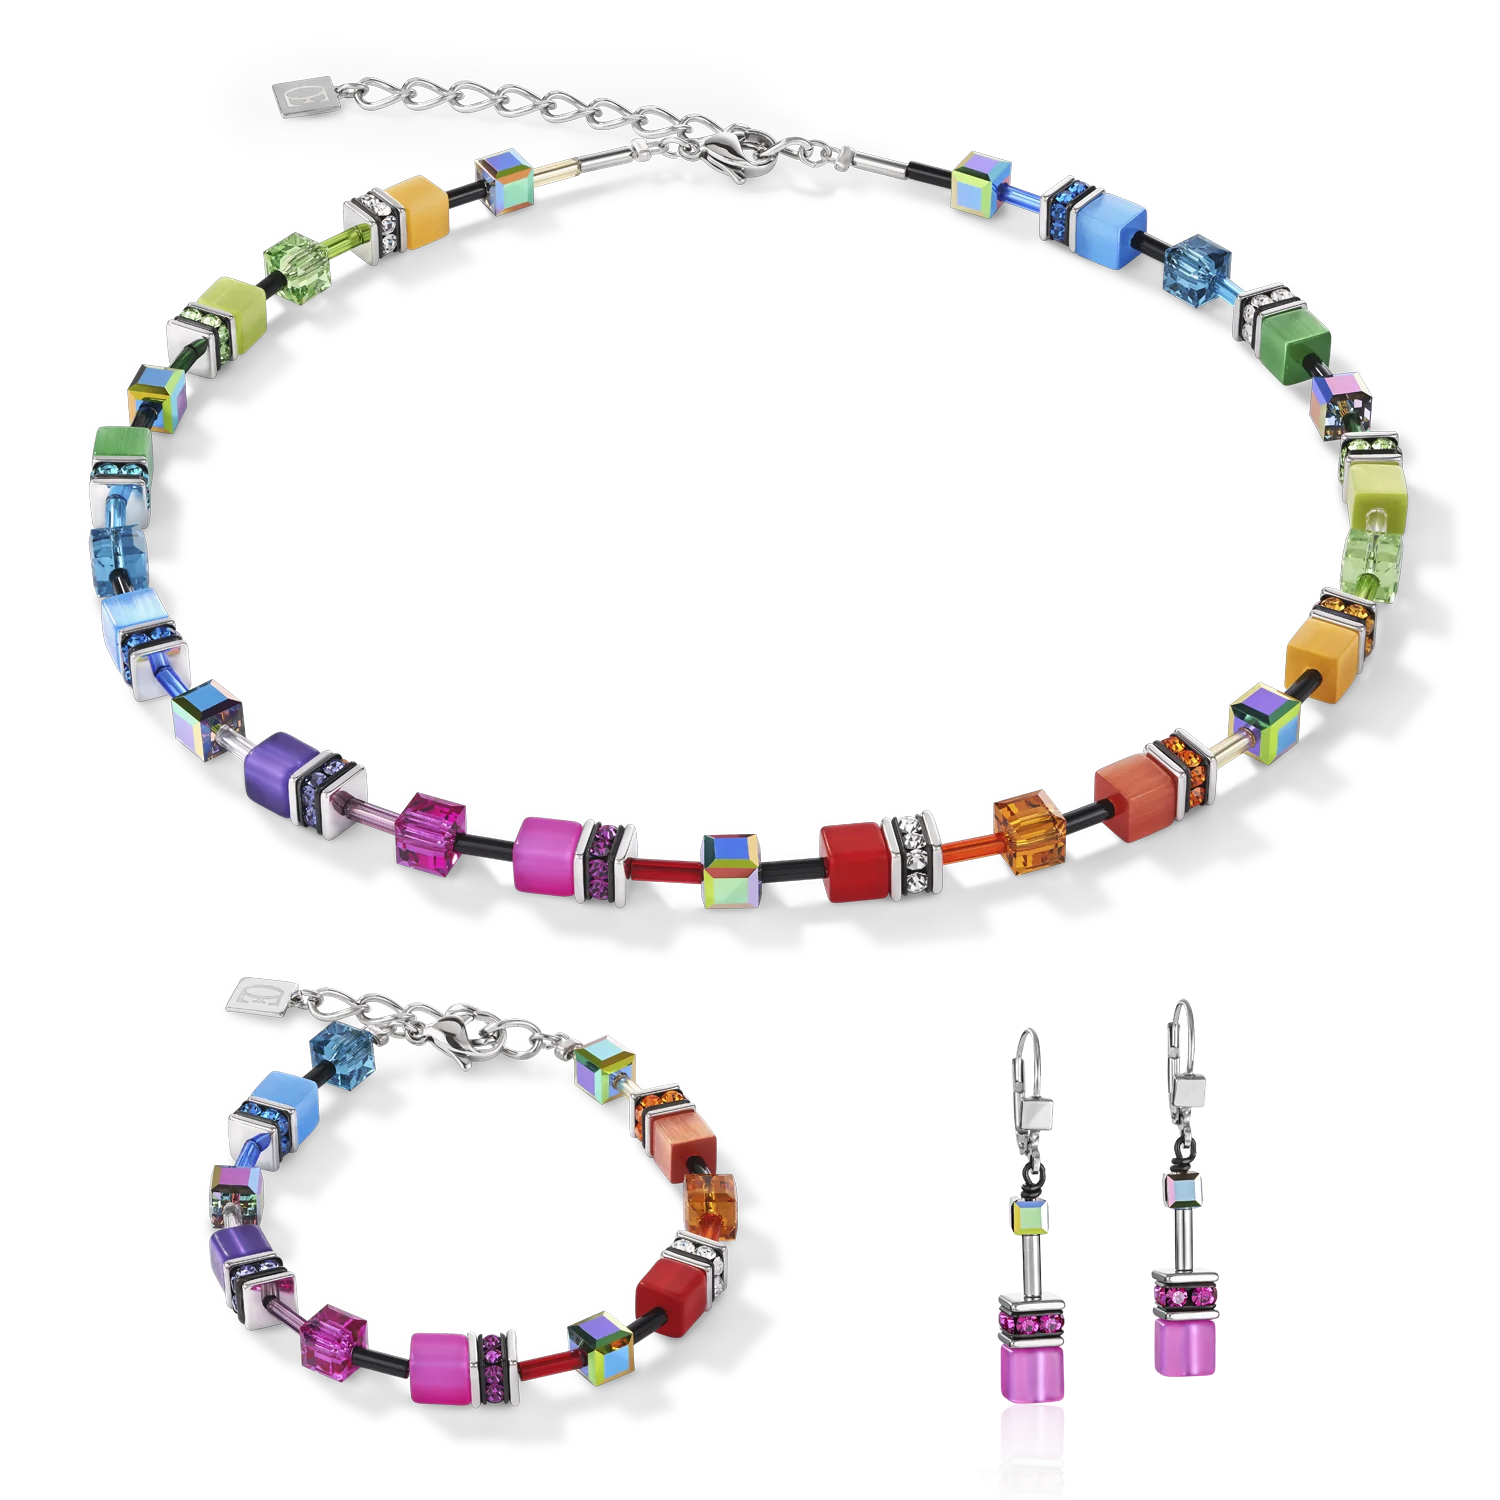 Collection 2838 - Multicolor Rainbow Silver - Necklace - Cœur de Lion 